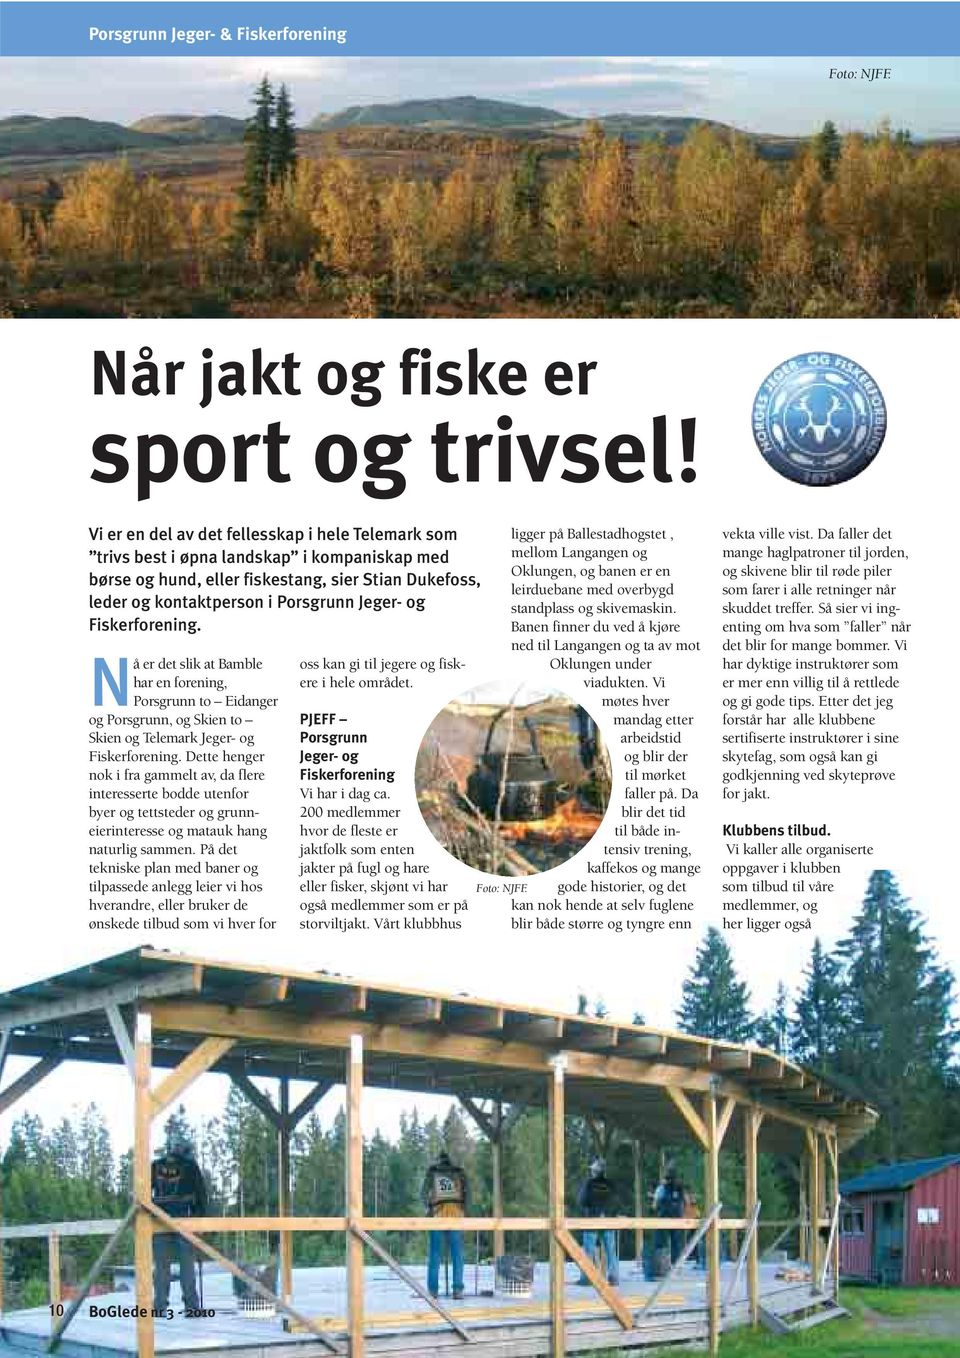 Fiskerforening. Nå er det slik at Bamble har en forening, Porsgrunn to Eidanger og Porsgrunn, og Skien to Skien og Telemark Jeger- og Fiskerforening.